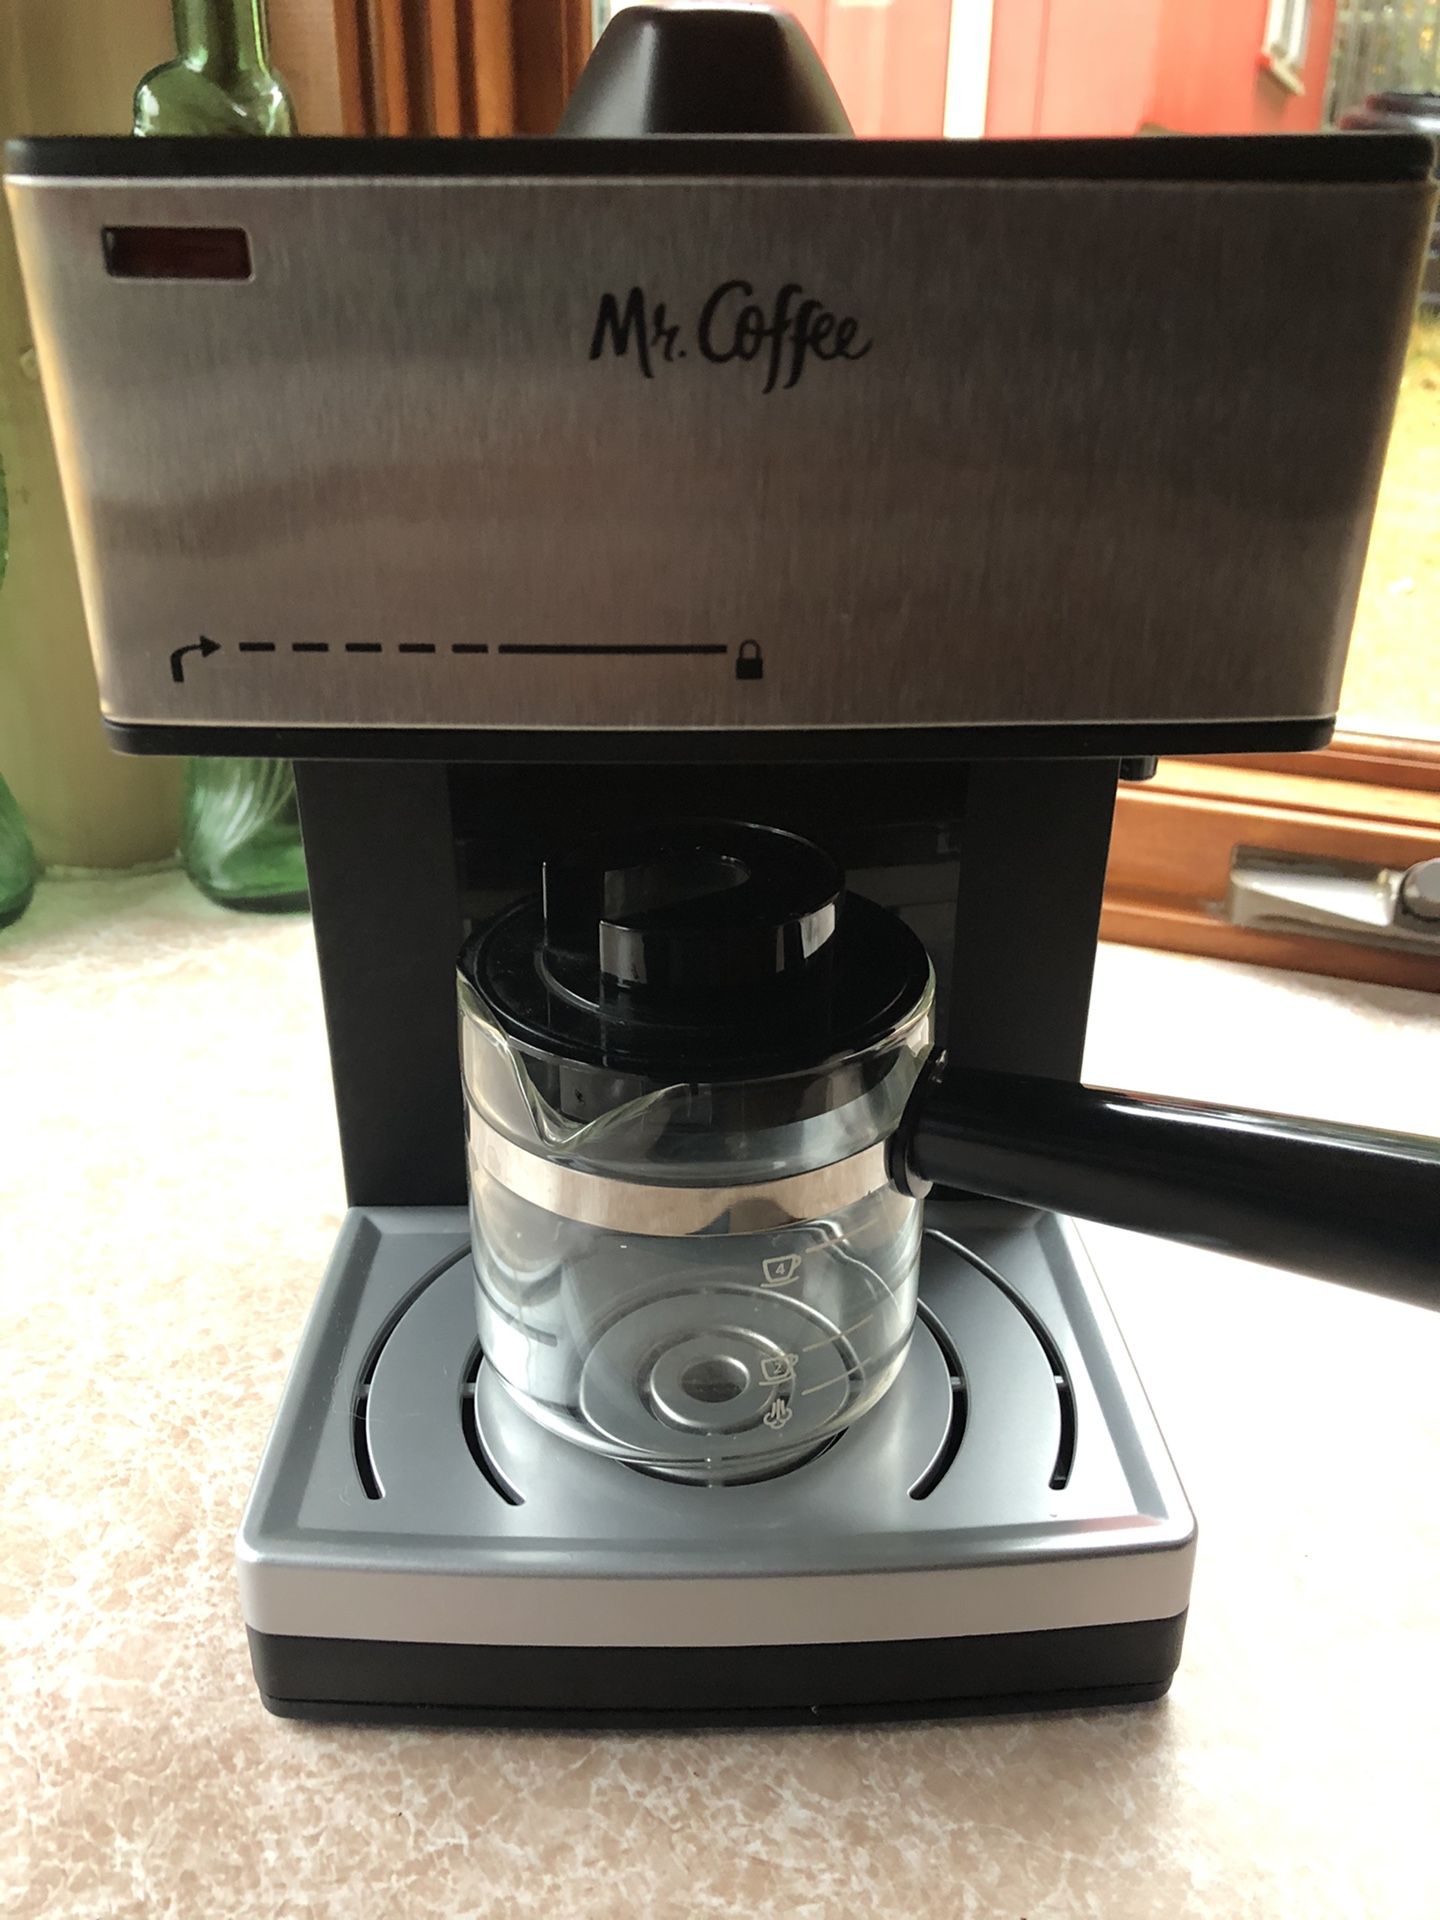 Mr Coffee Espresso/Cappuccino Maker